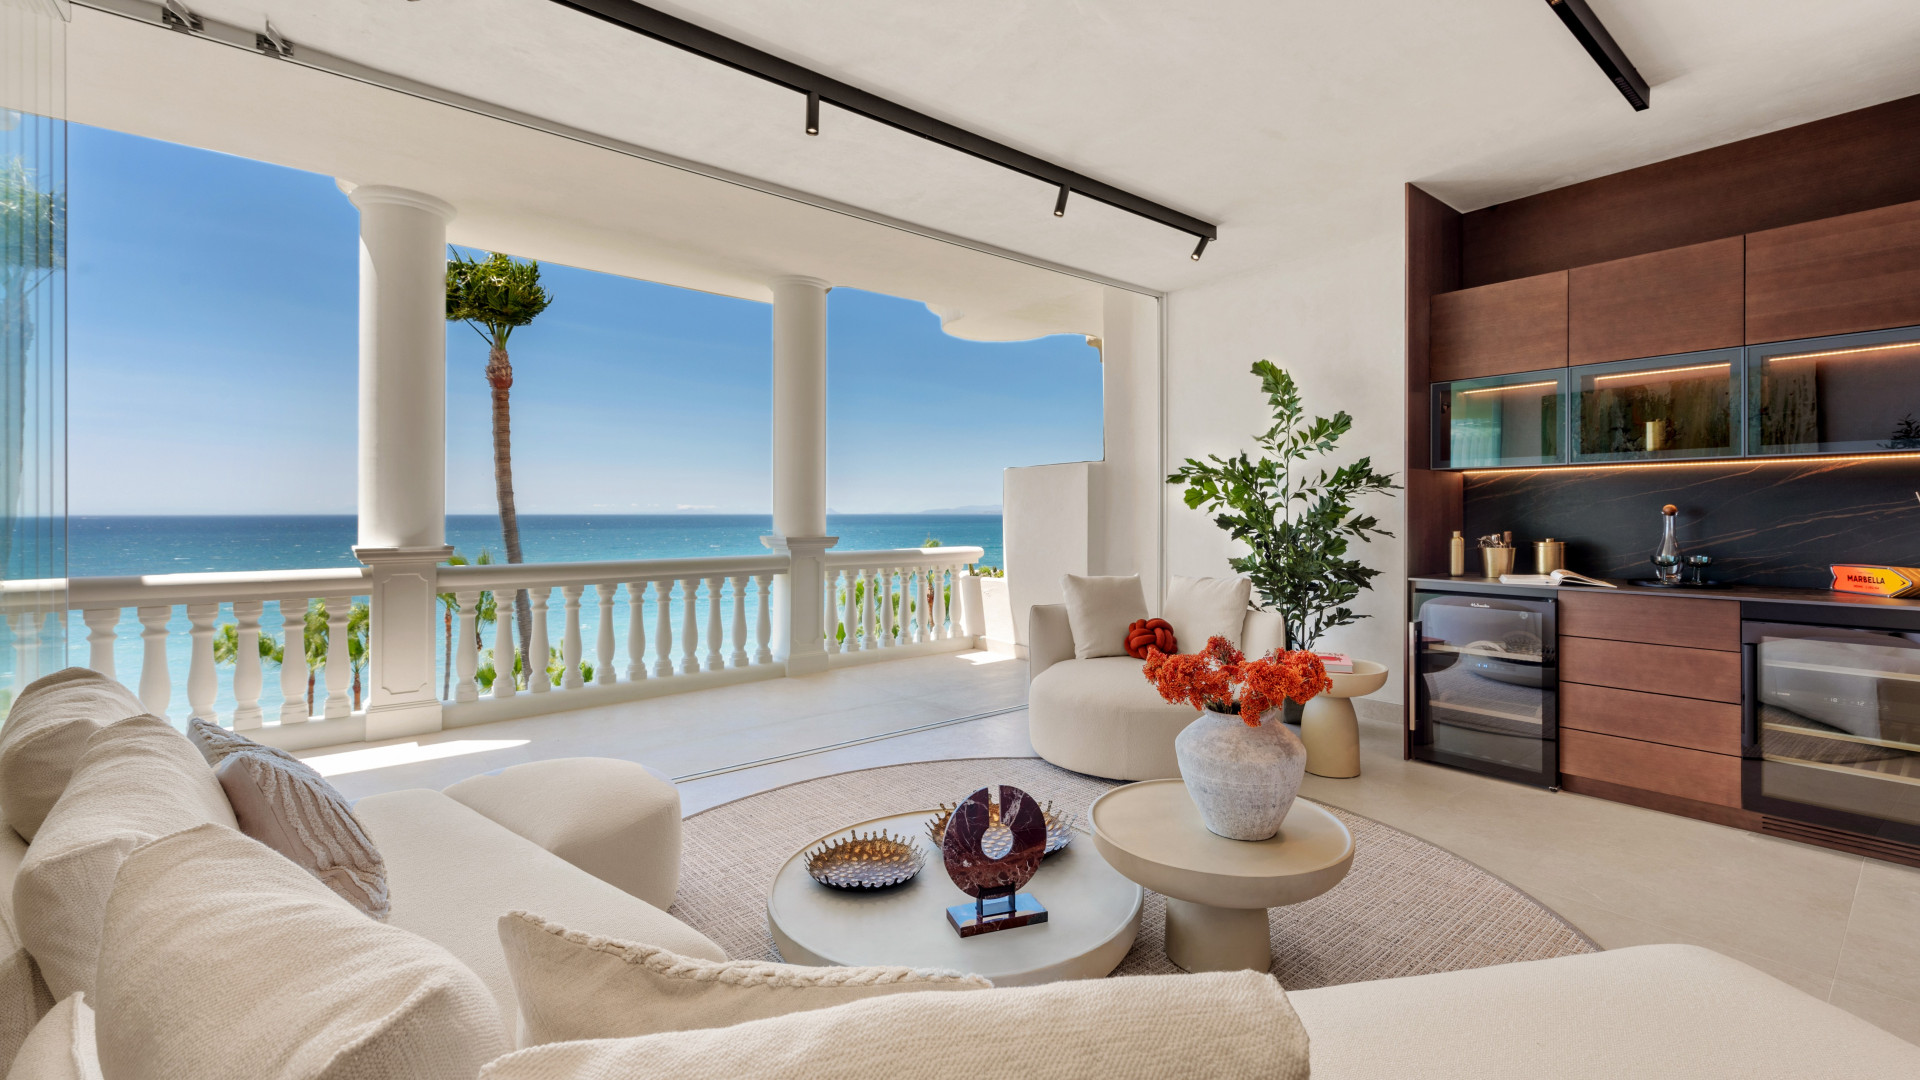 Lujoso apartamento de 3 dormitorios y 3 baños en primera línea de playa, totalmente reformado con fantásticas vistas panorámicas al mar